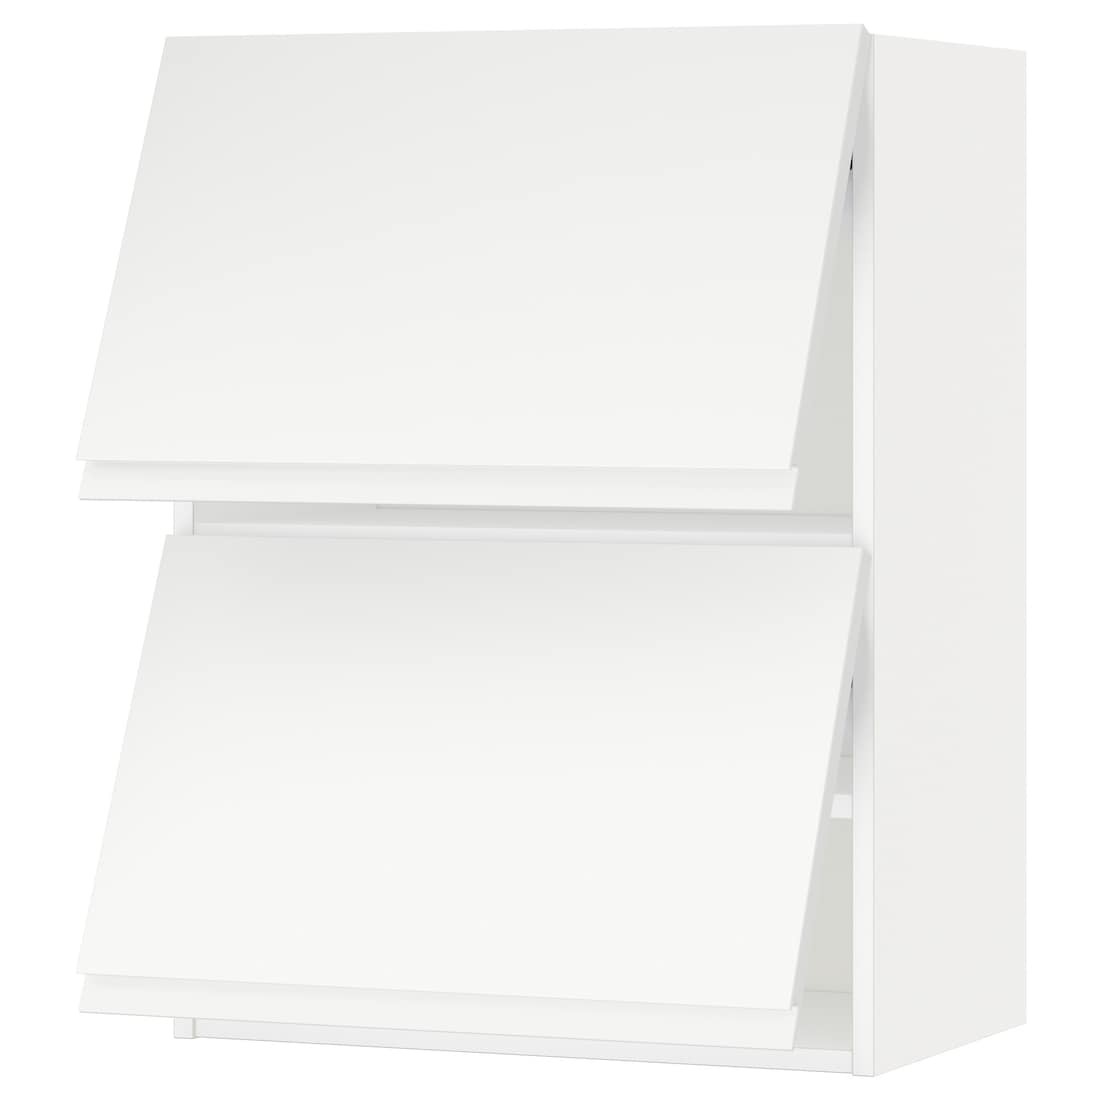 IKEA METOD МЕТОД Навесной горизонтальный шкаф / 2 двери, белый / Voxtorp матовый белый, 60x80 см 89391948 893.919.48